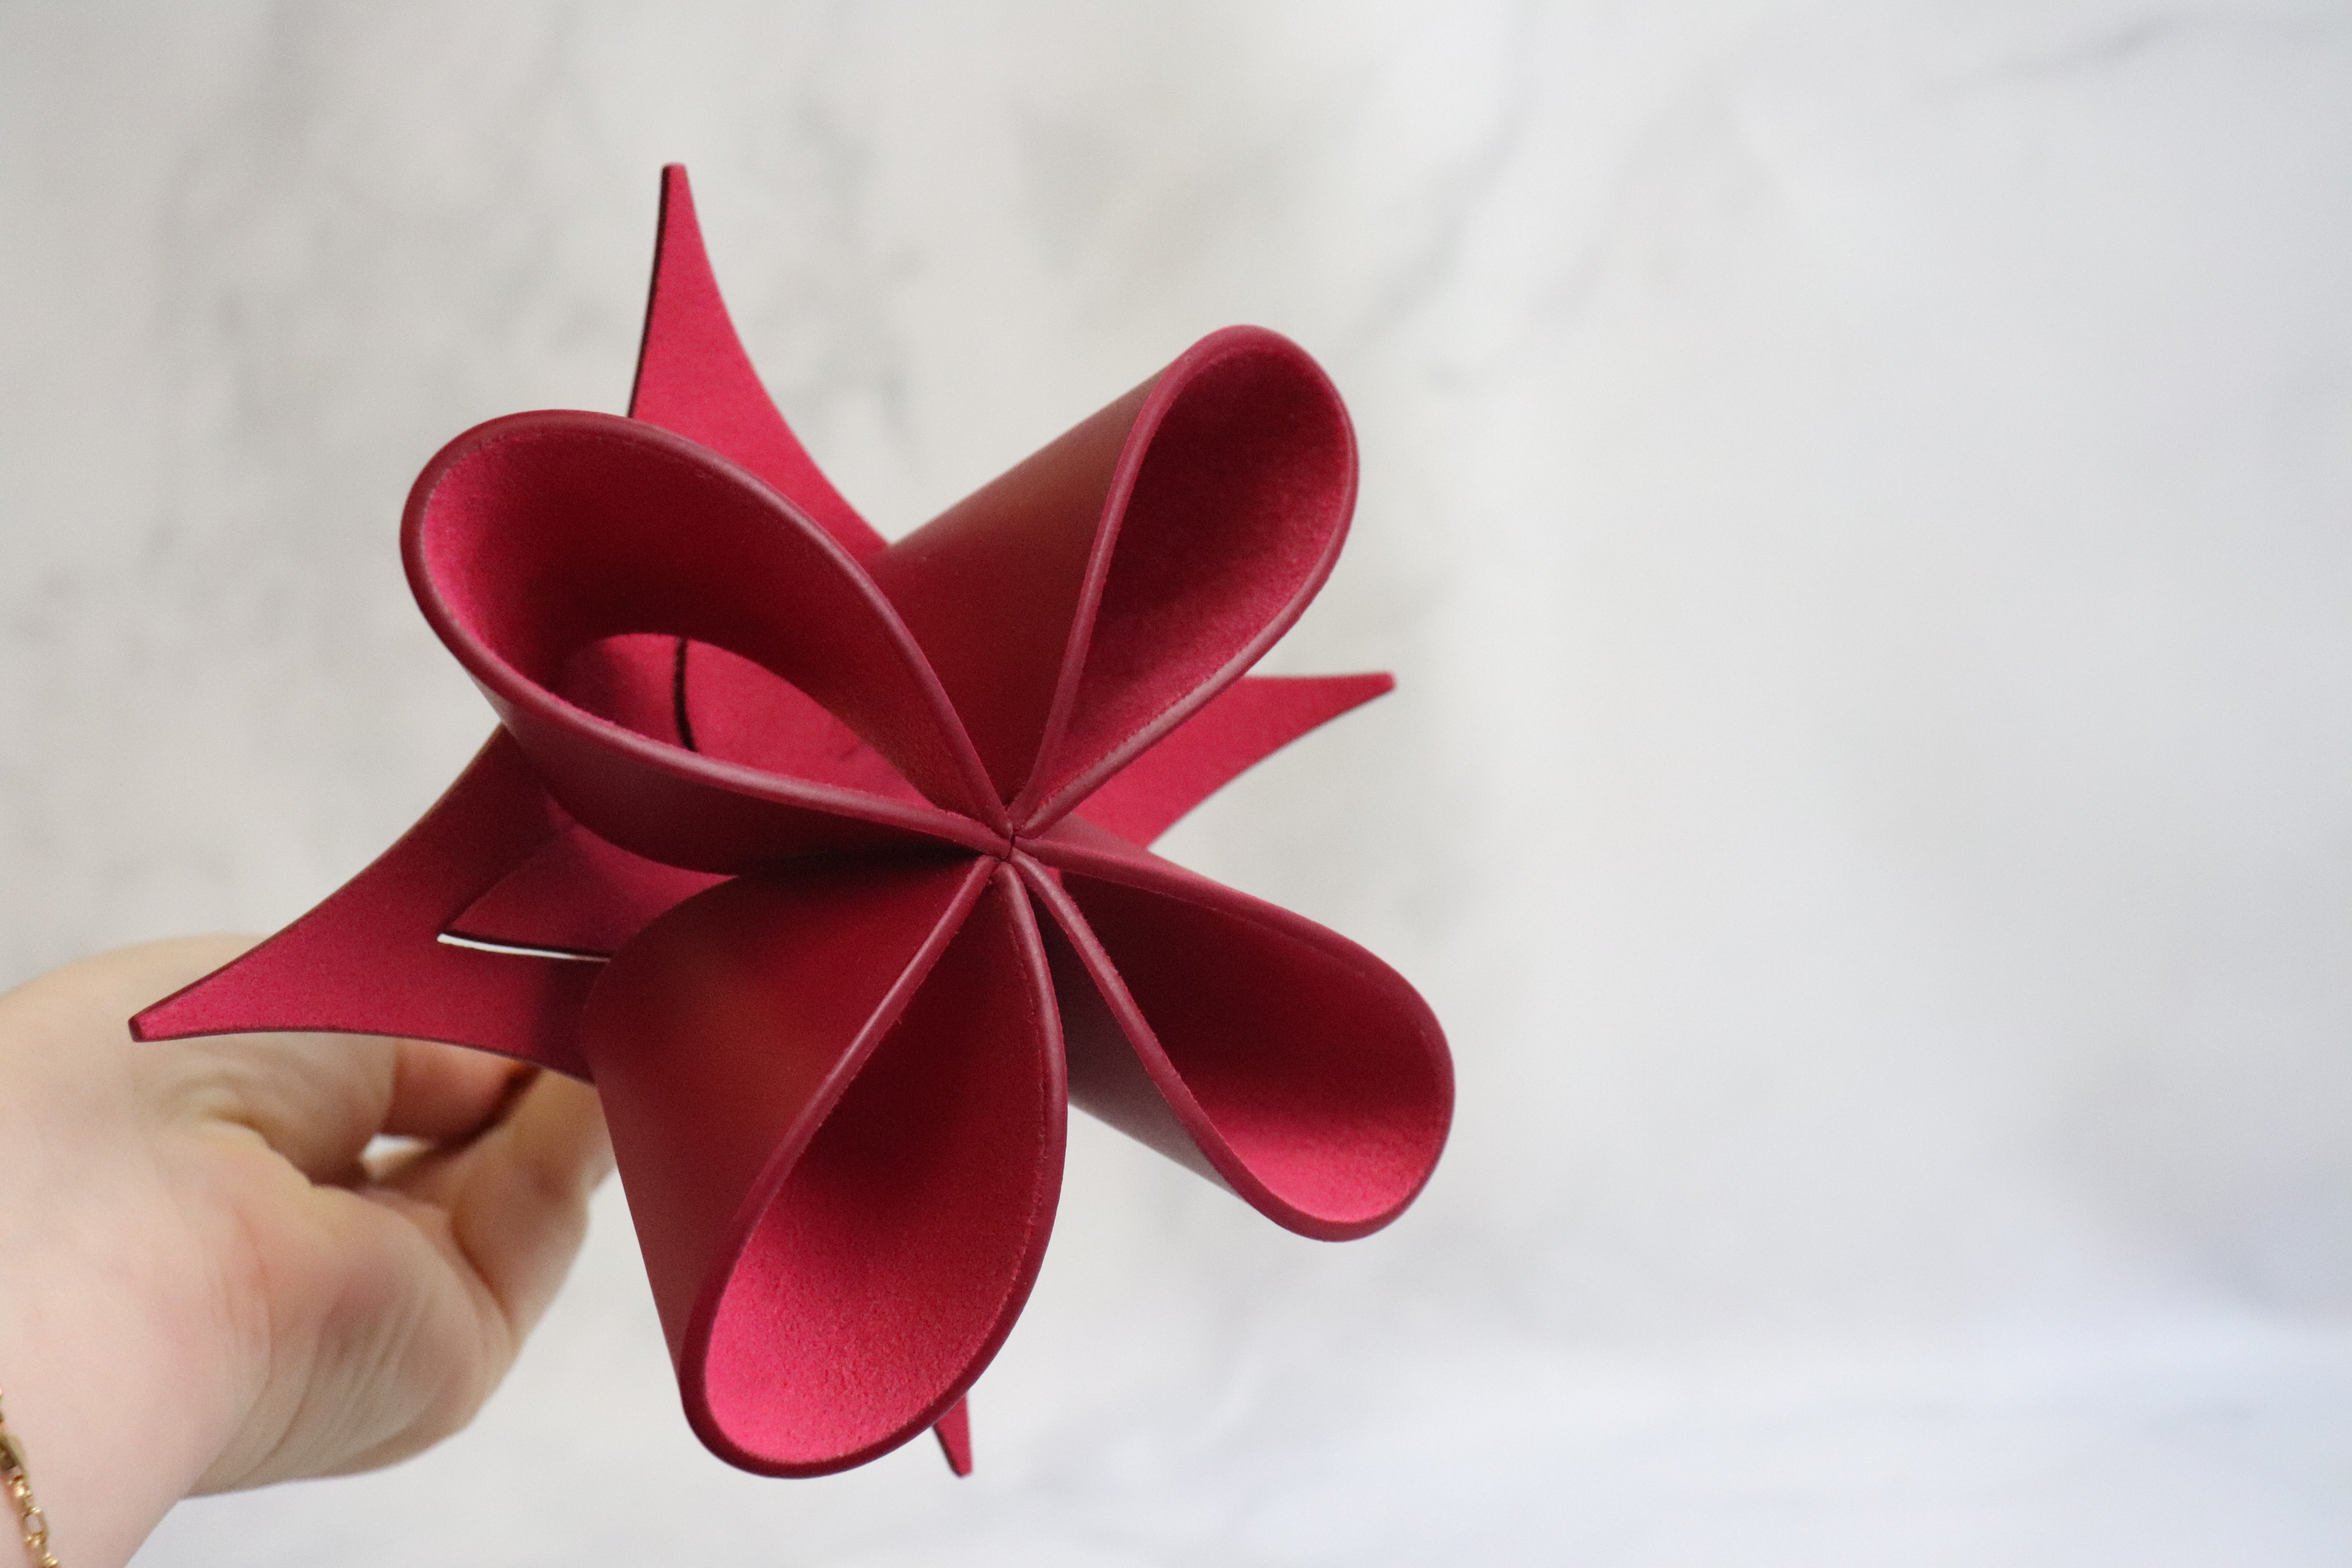 Louis Vuitton Origami Flower, Burgundy, New in Tissue